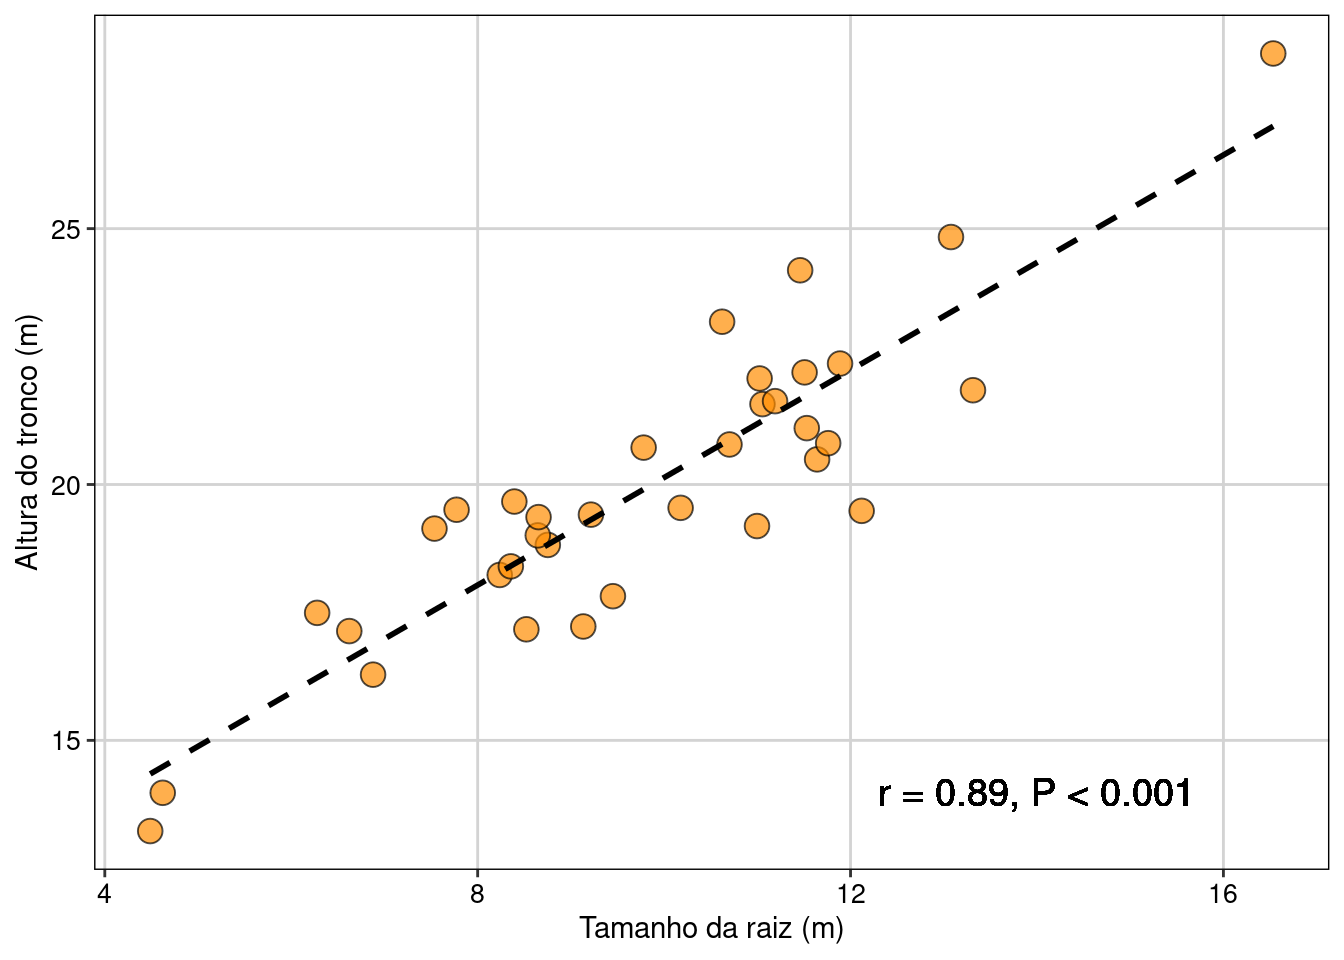 Gráfico mostrando a relação entre as variáveis e uma linha de tendência dos dados.